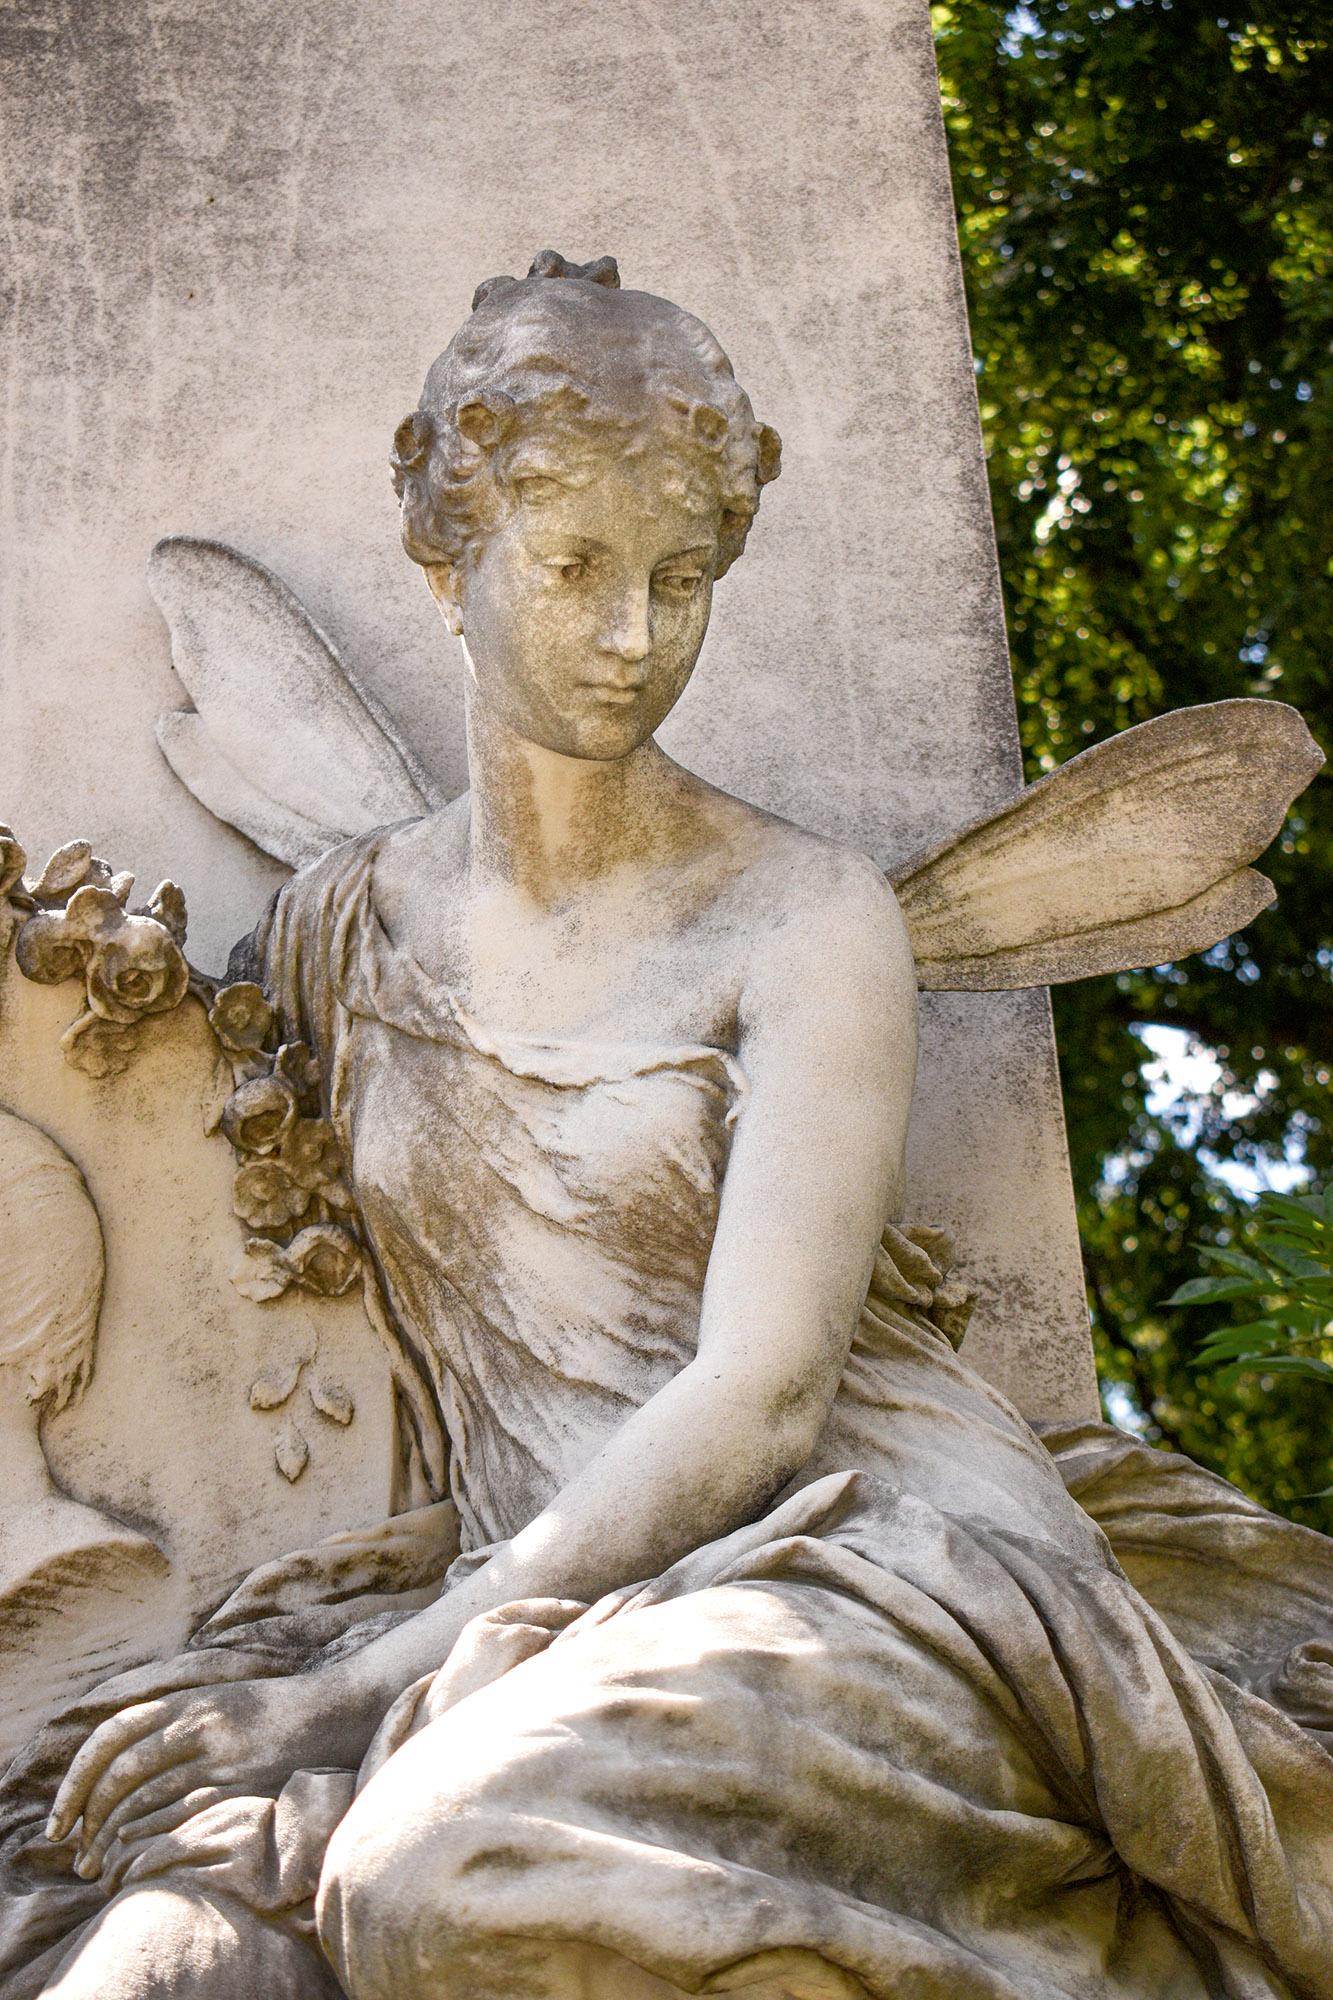  Melancholijnie zamyślona śmierć na jednym z największych cmentarzy Europy – Zentralfriedhof w Wiedniu.(Fot. Getty Images)